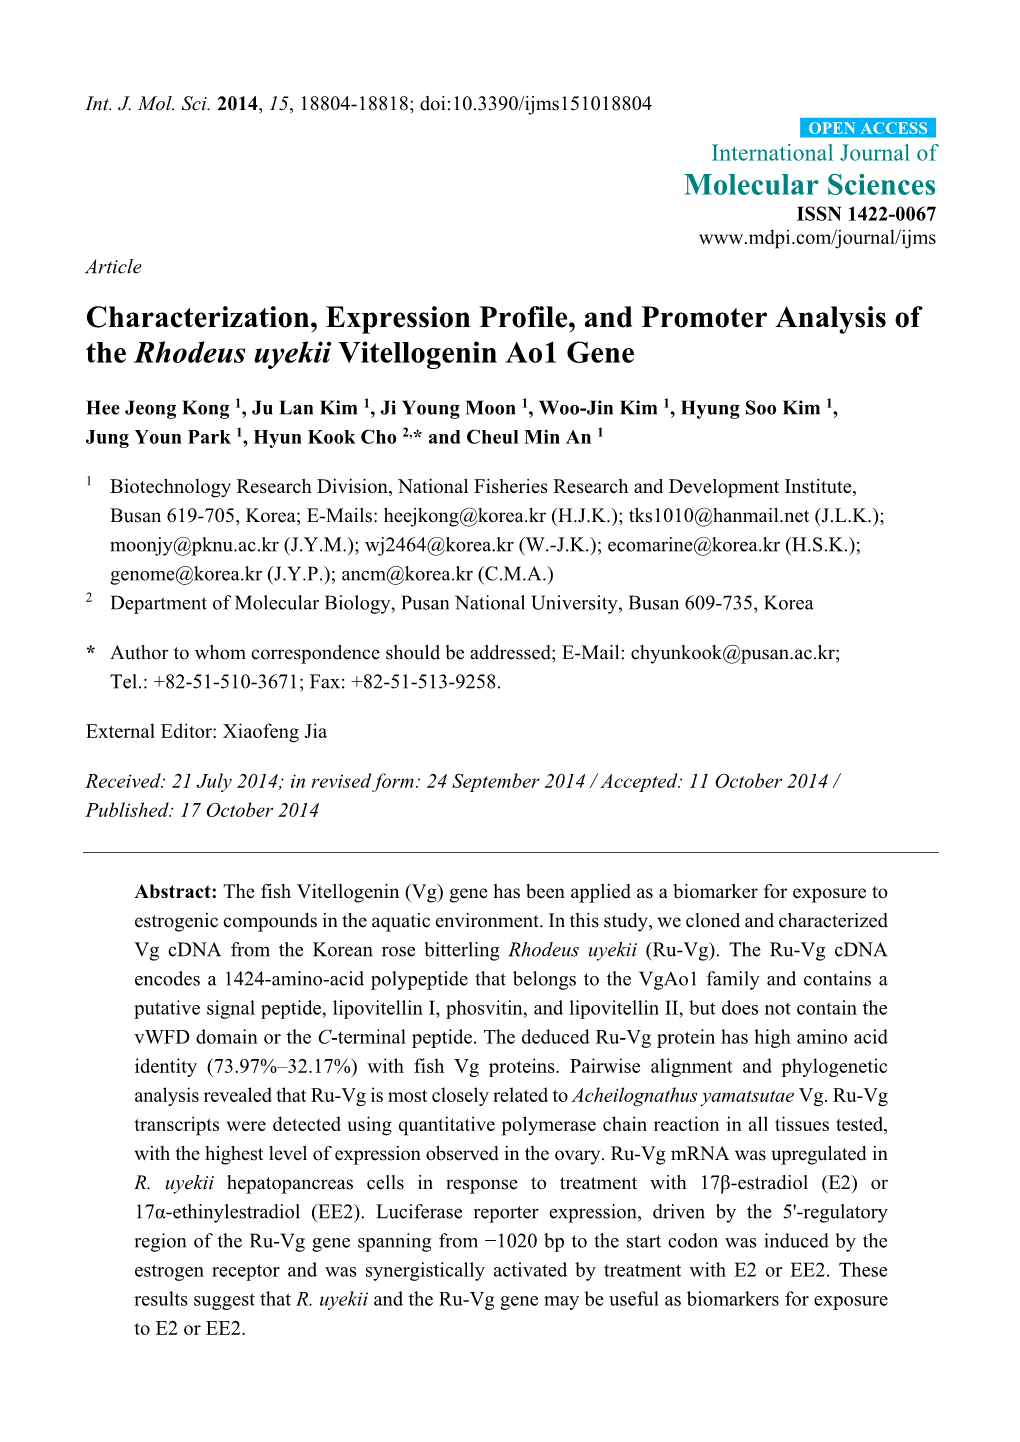 Characterization, Expression Profile, and Promoter Analysis of the Rhodeus Uyekii Vitellogenin Ao1 Gene